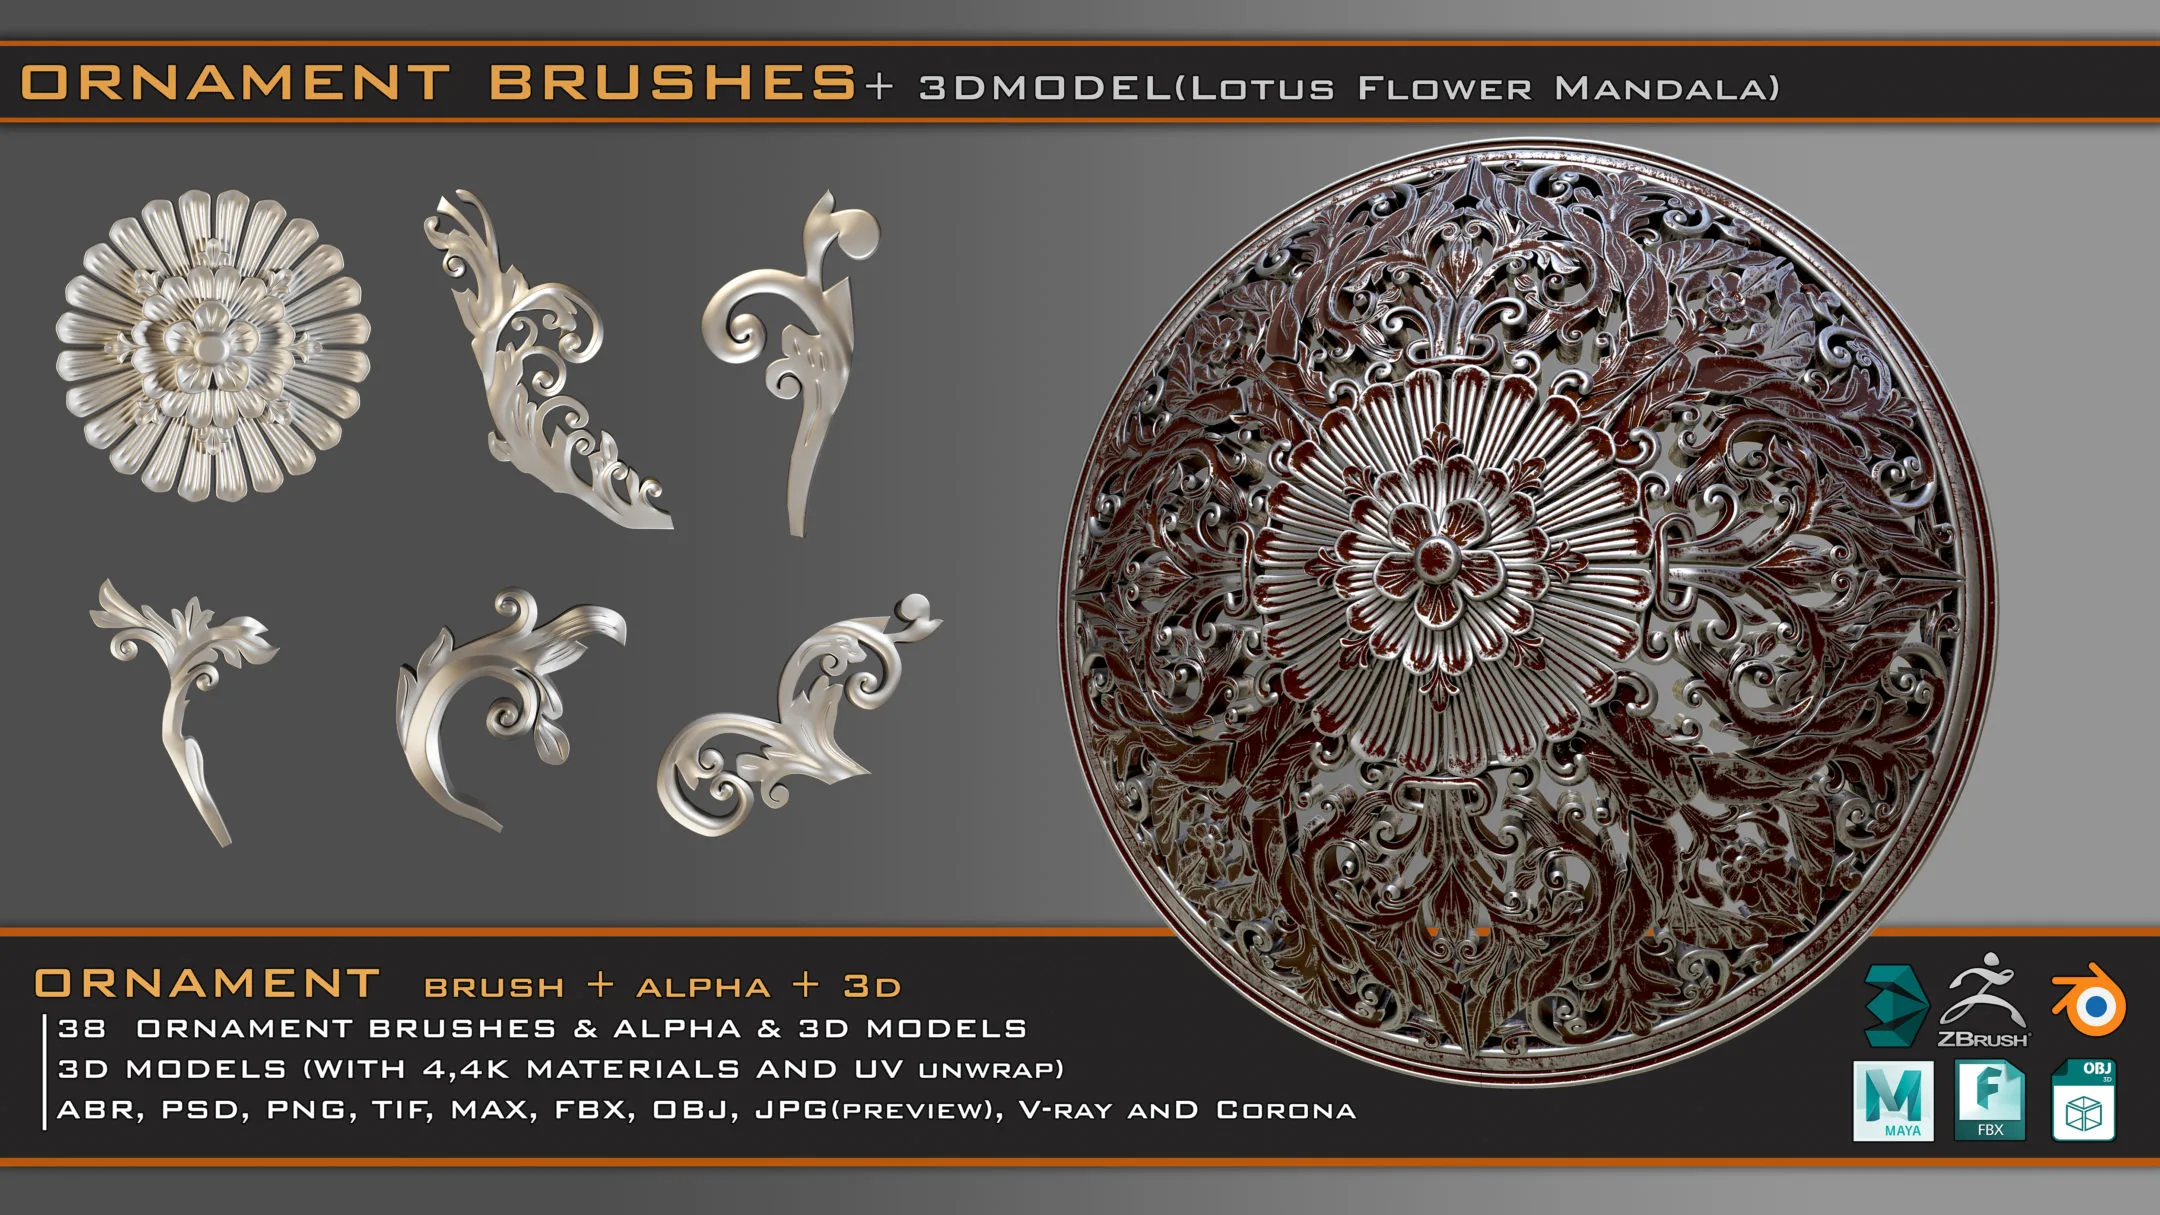 38 Ornament Brushes + 3D Models + 4K PBR Textures